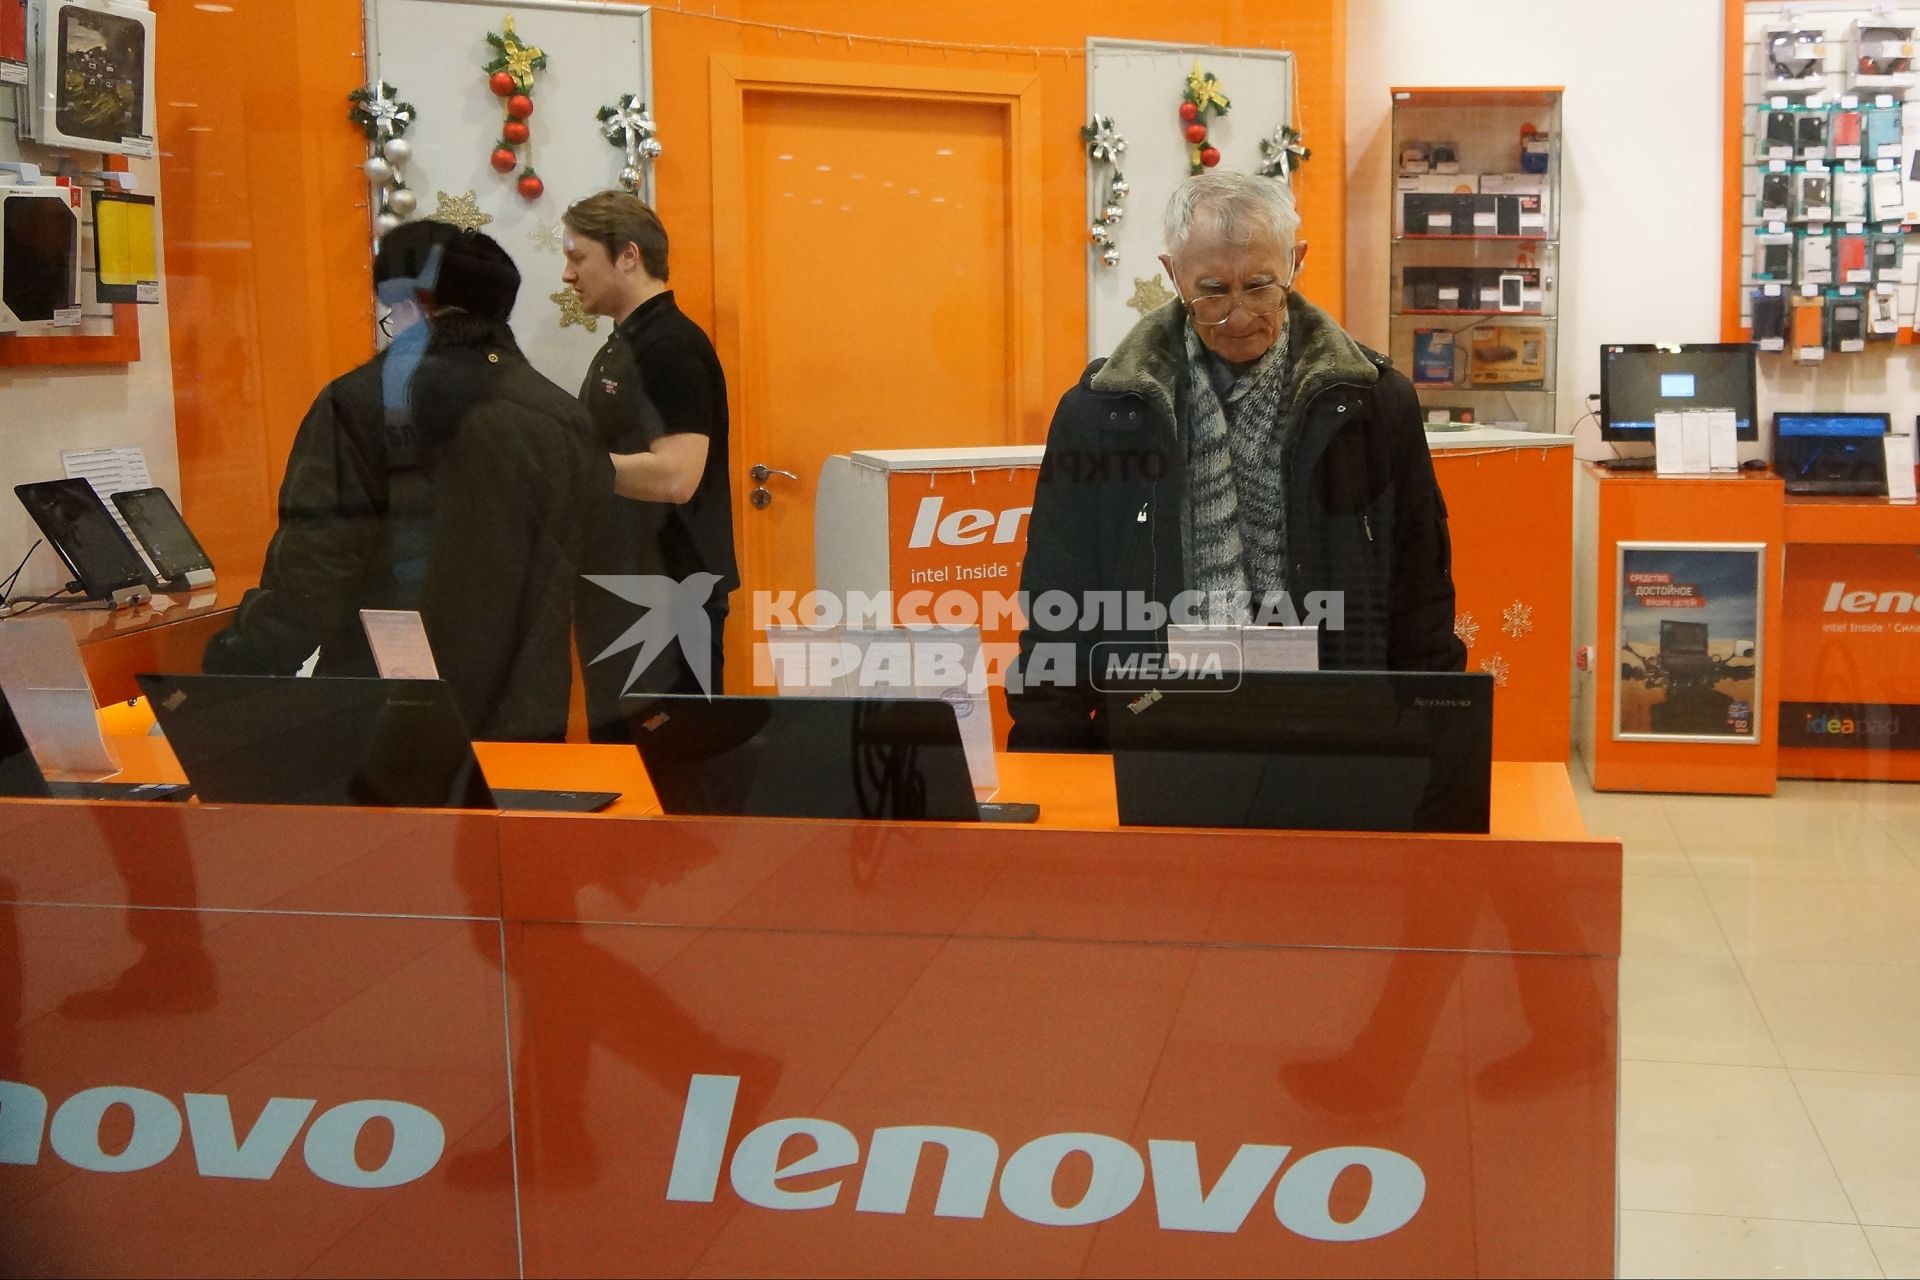 посетители смотрят ноутбуки в фирменном магазине Леново (Lenovo)